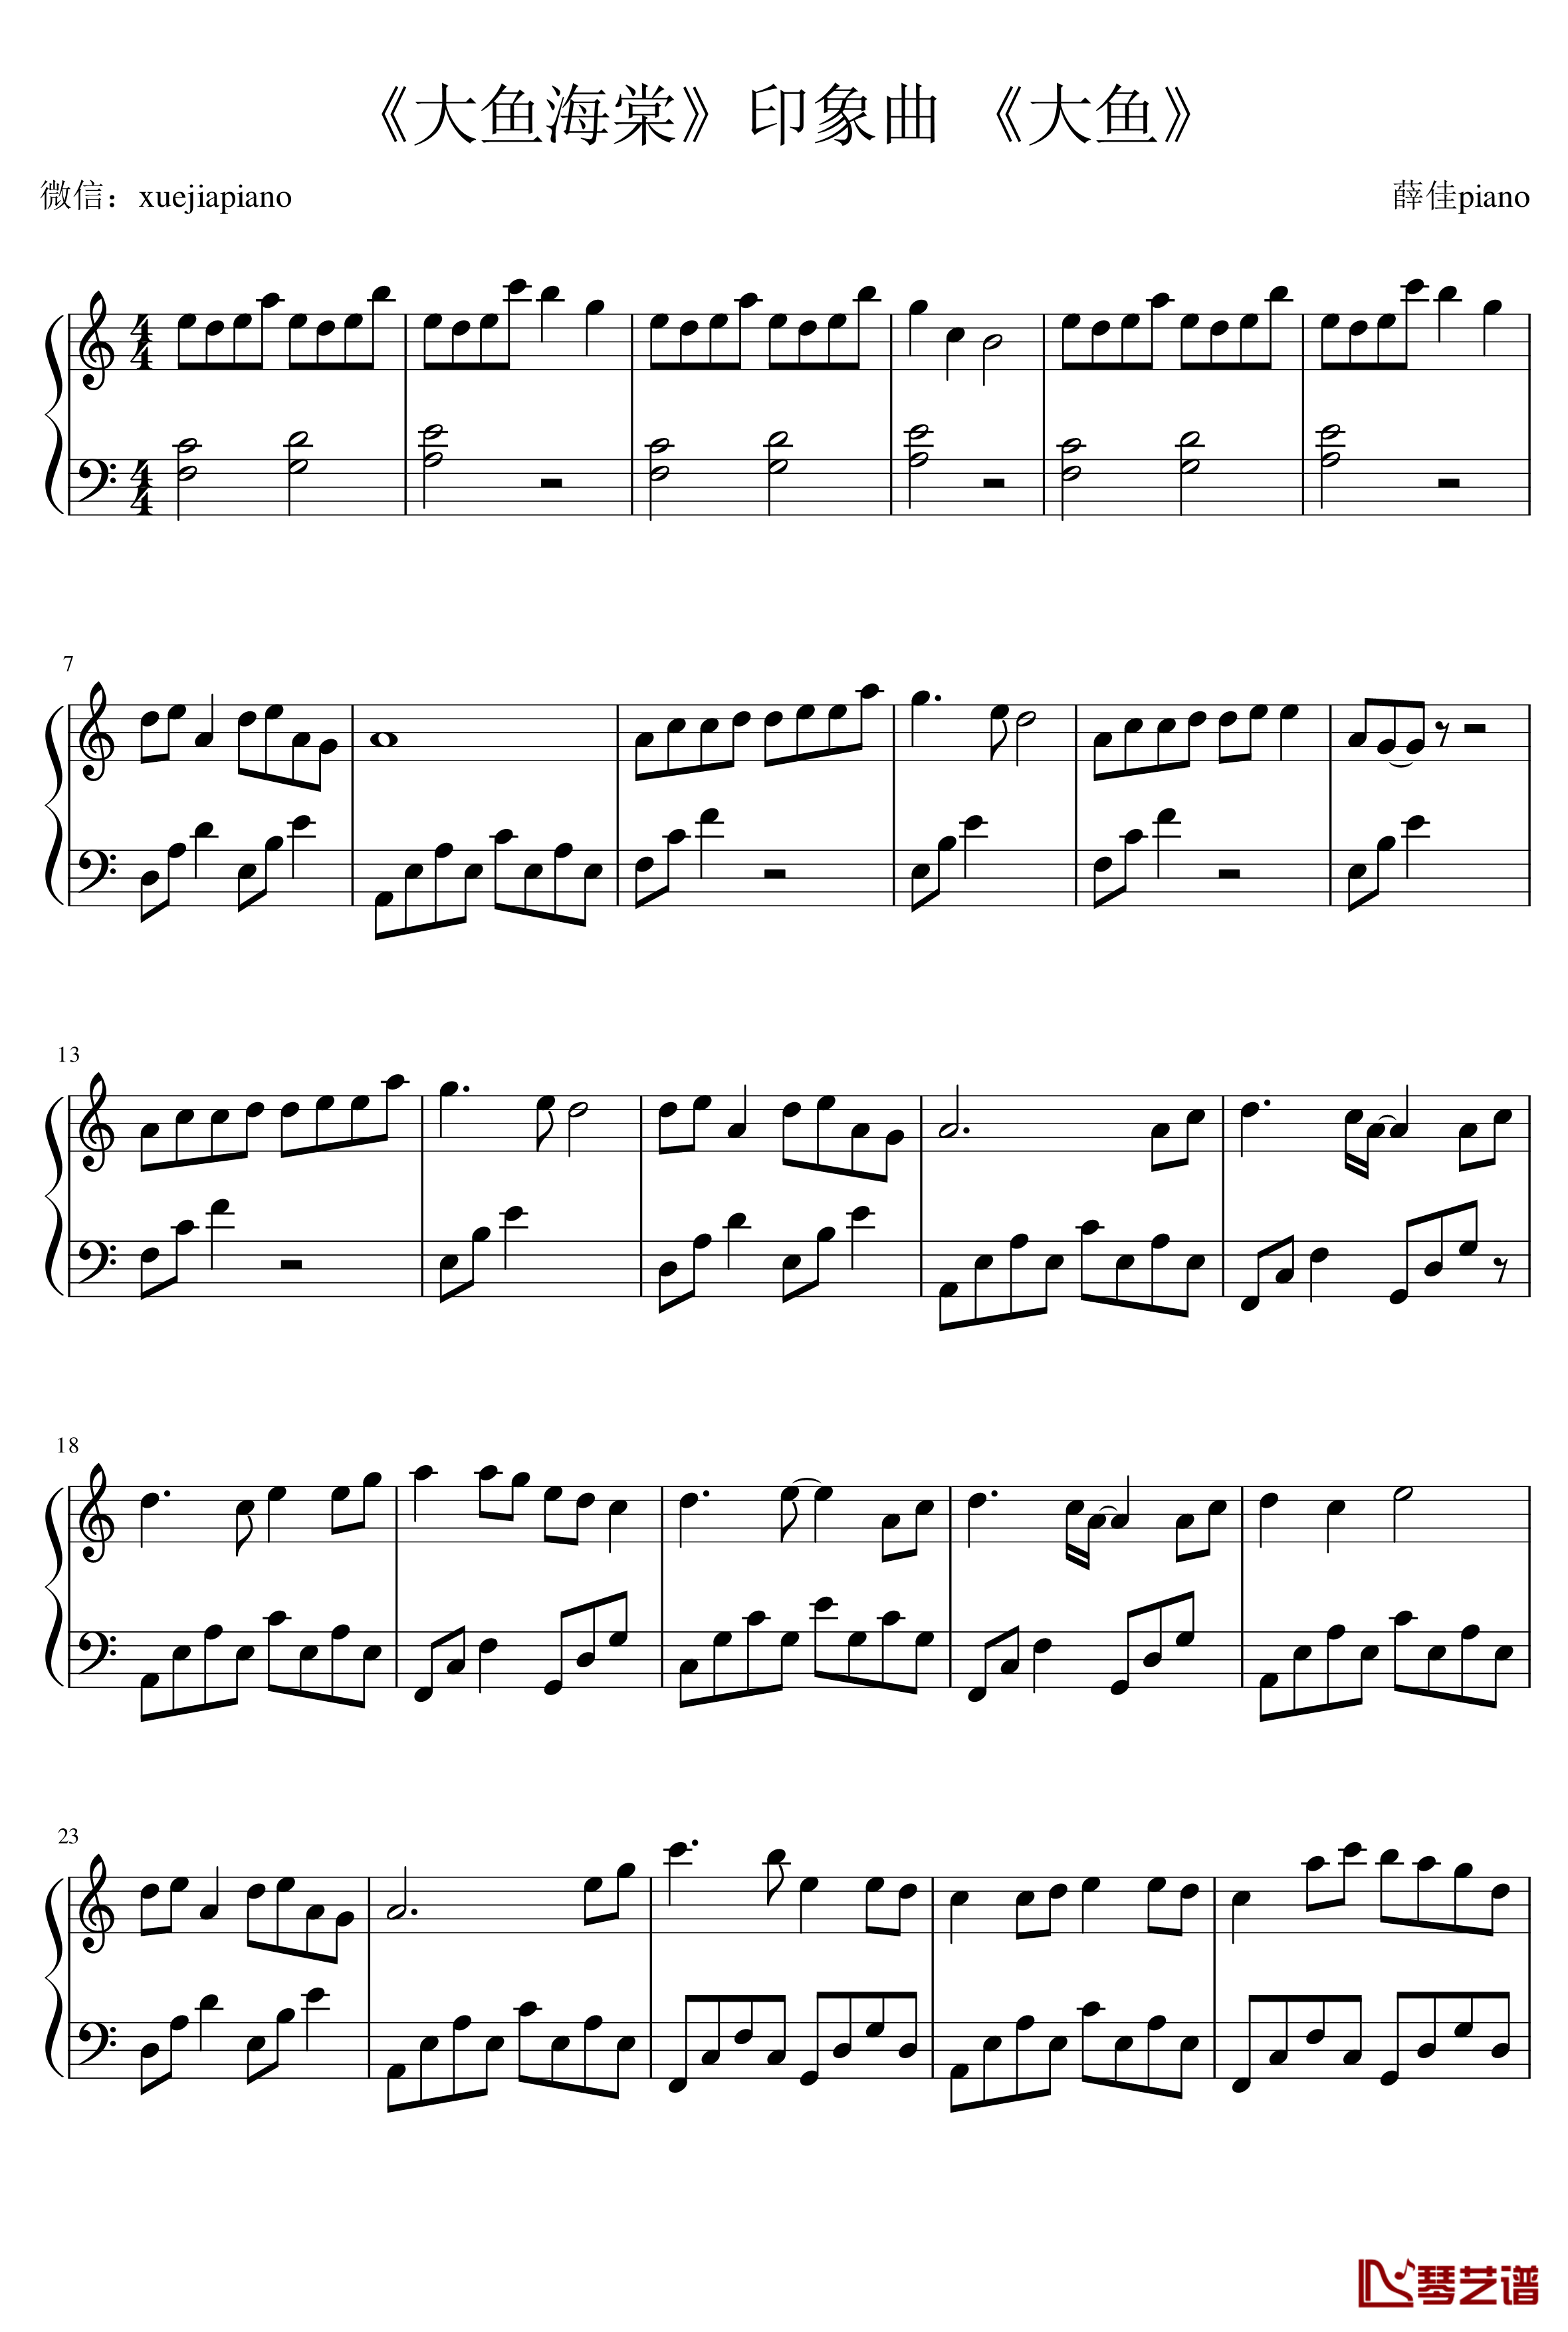 大鱼钢琴谱-最简易版-大鱼海棠 周深1